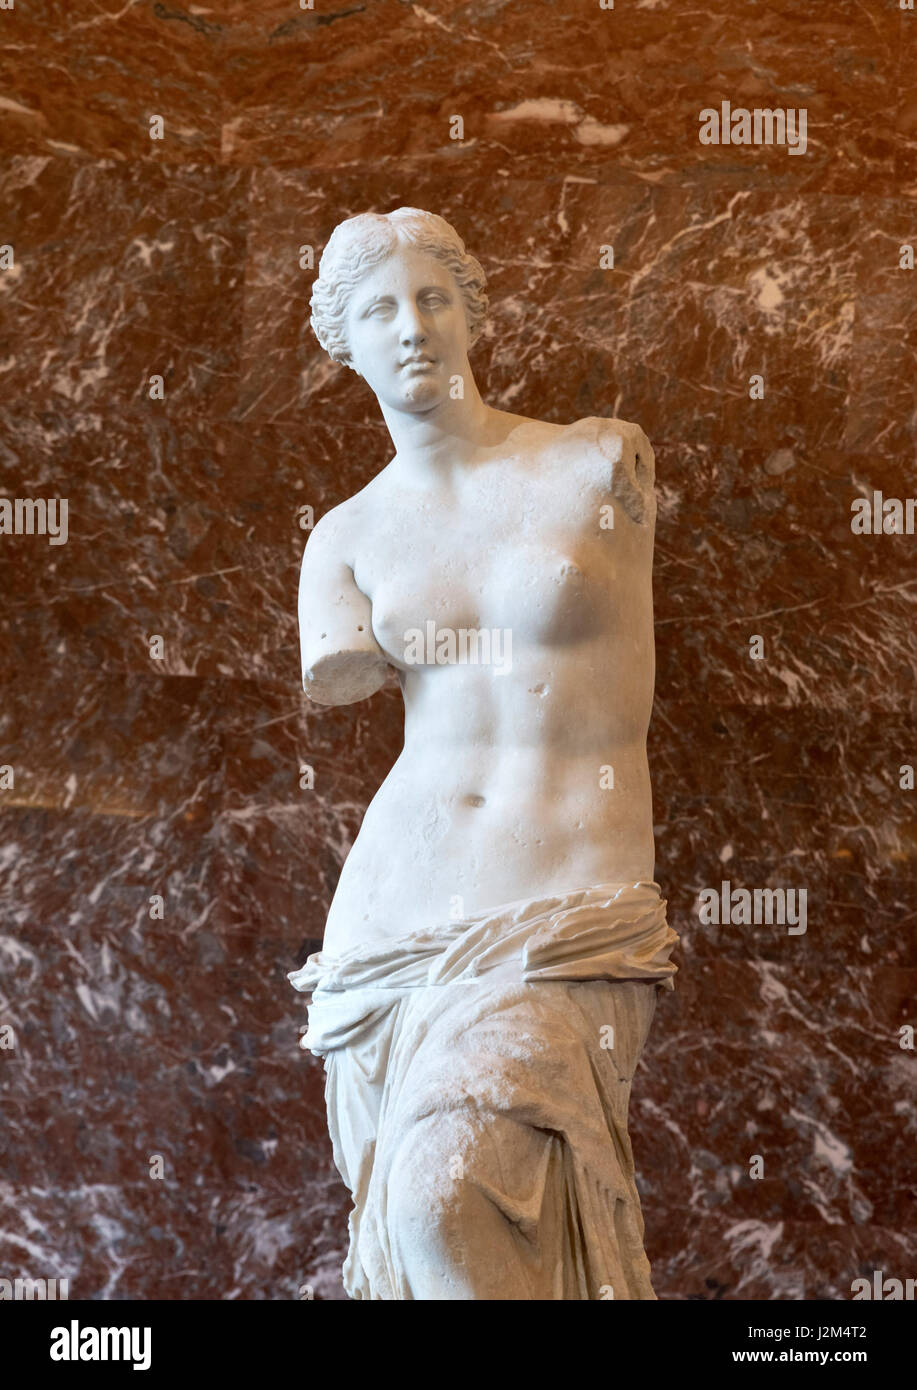 Venus de Milo (Afrodita de Milos), una antigua estatua griega, probablemente por Alexandros de Antioquía, que datan de alrededor de 130-100 AC. La efigie de Afrodita, la diosa griega del amor y de la belleza. Foto de stock